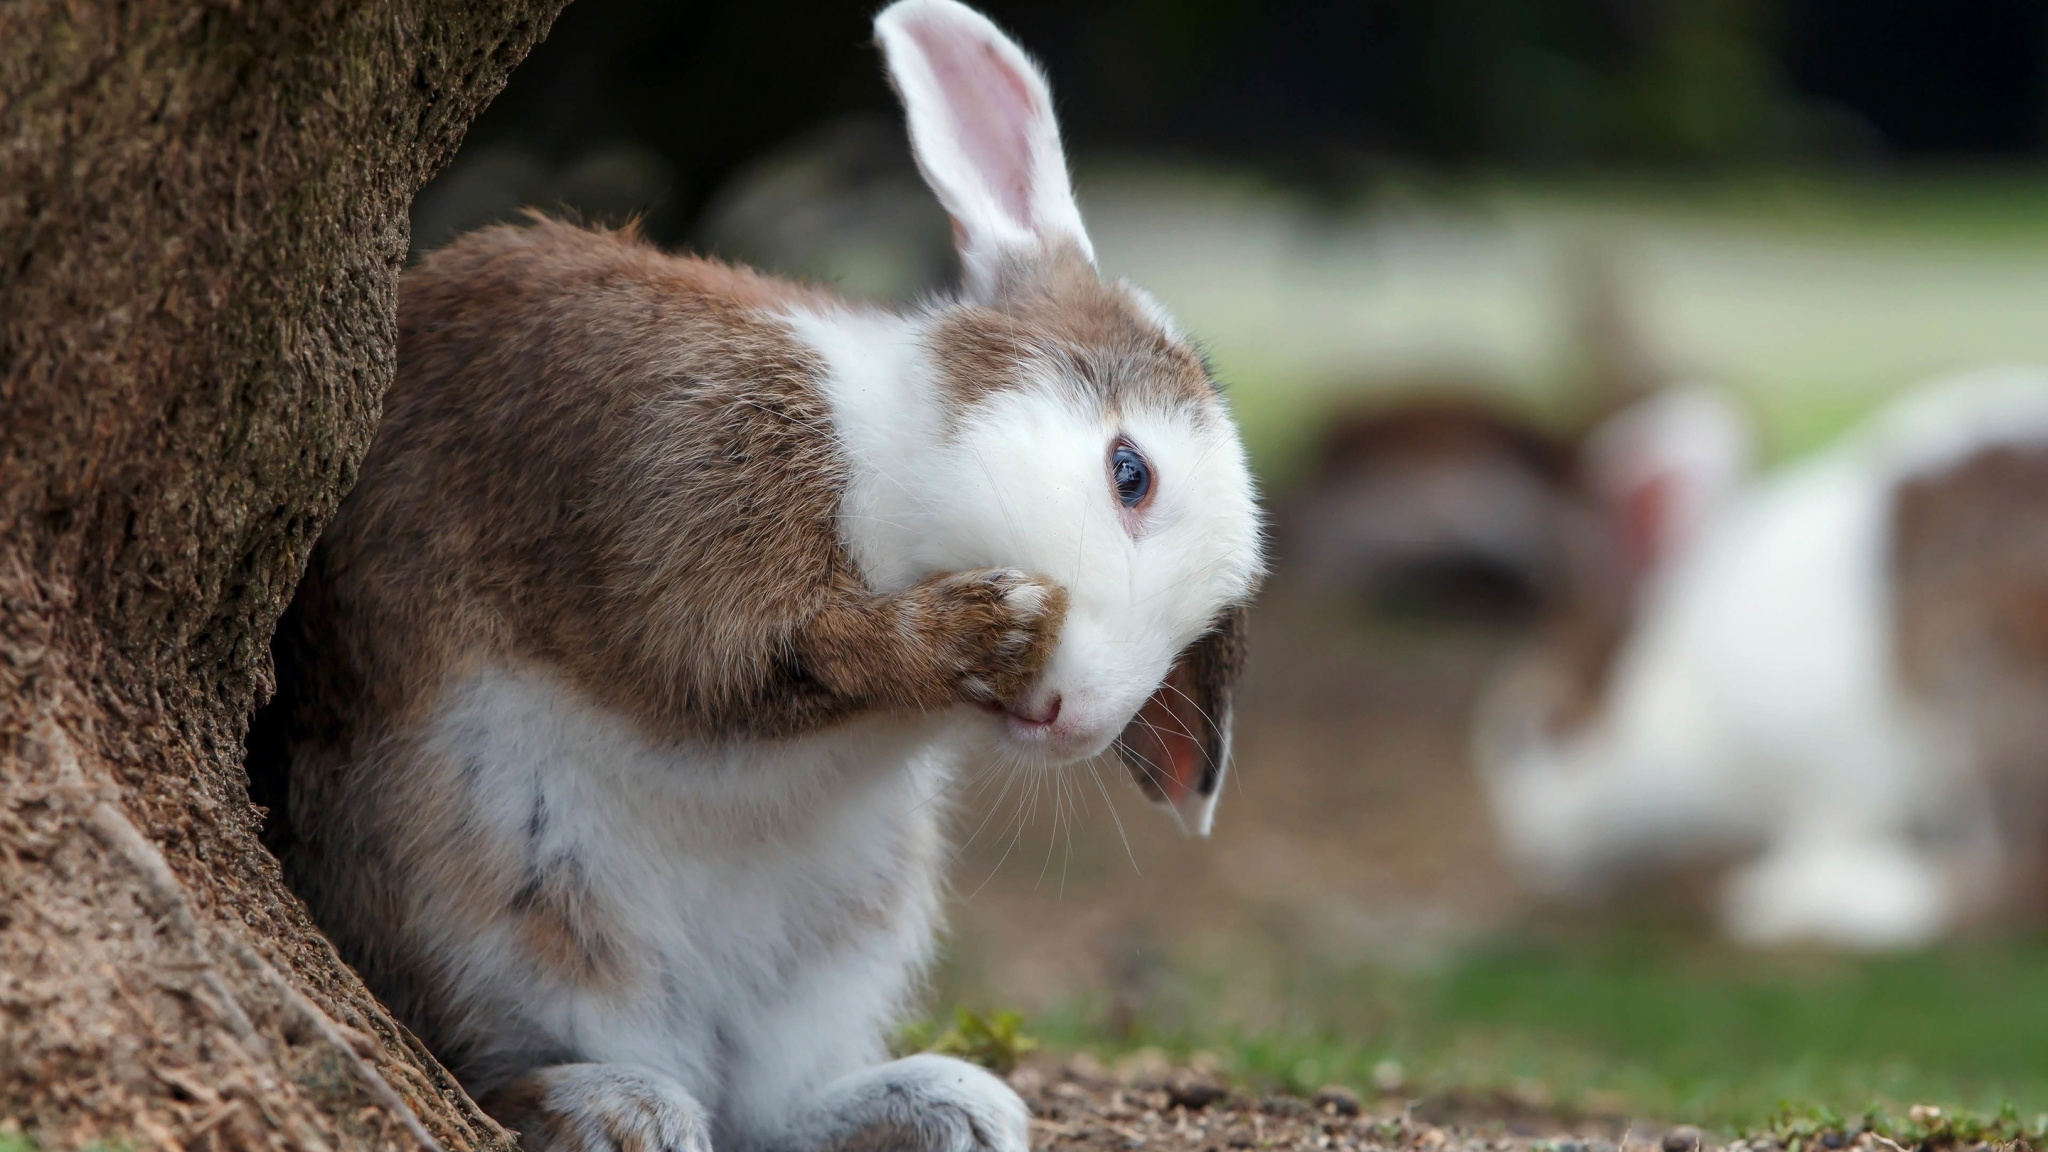 Cute Bunny, Pet Rabbit, Animal, Wallpaper - Cute Rabbit Mobile Wallpaper Hd - HD Wallpaper 